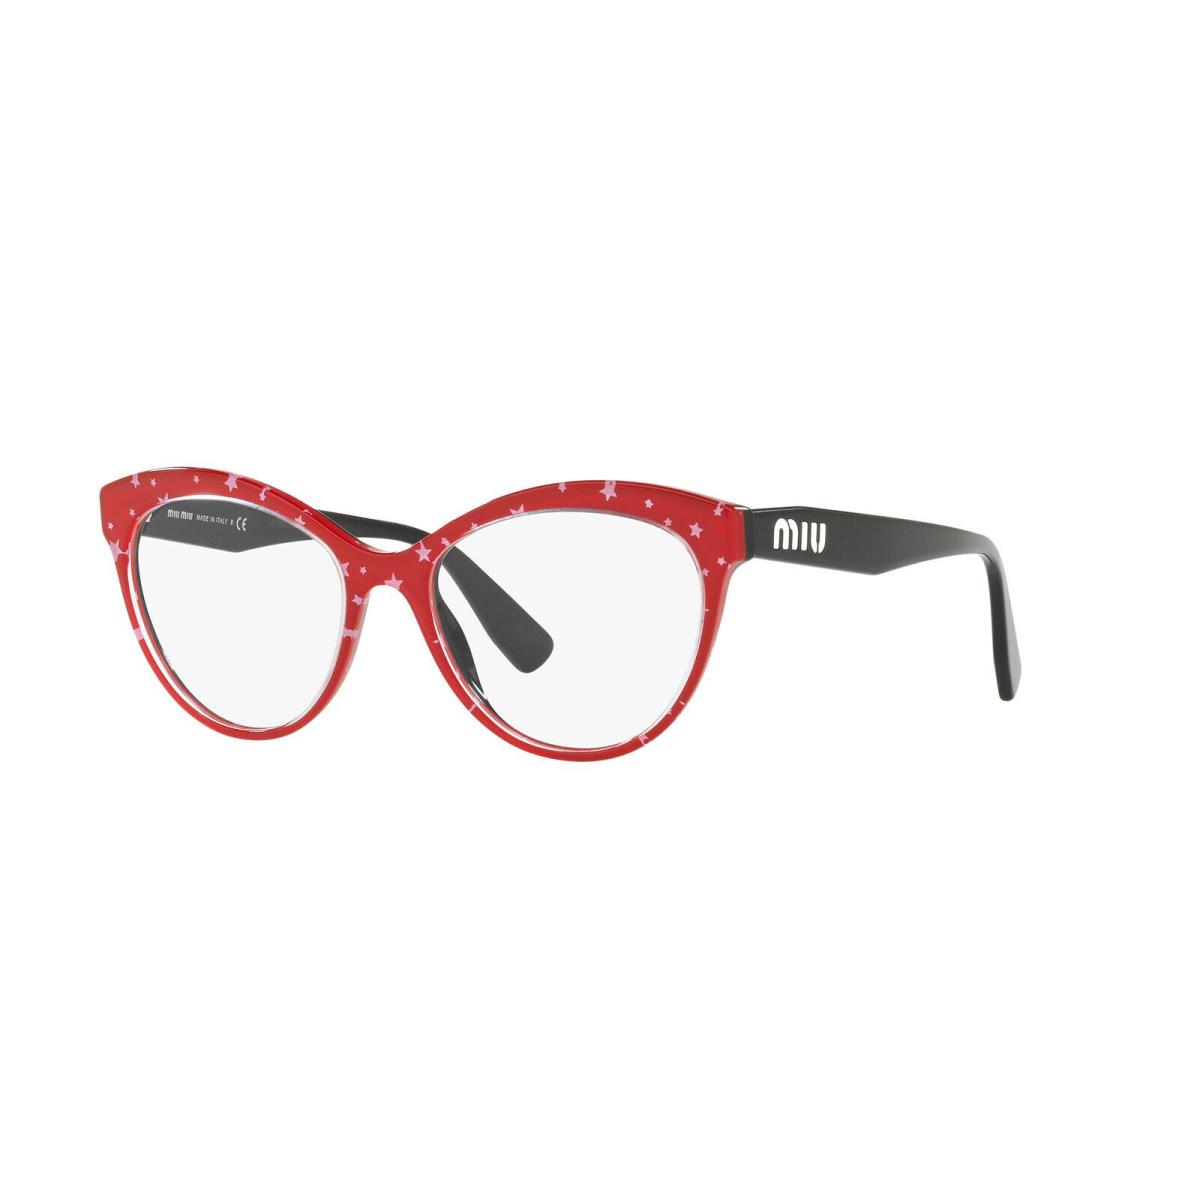 Miu Miu Eyeglasses MU 04RV 140 1O1 Red / White Star /black 53-17-145 10